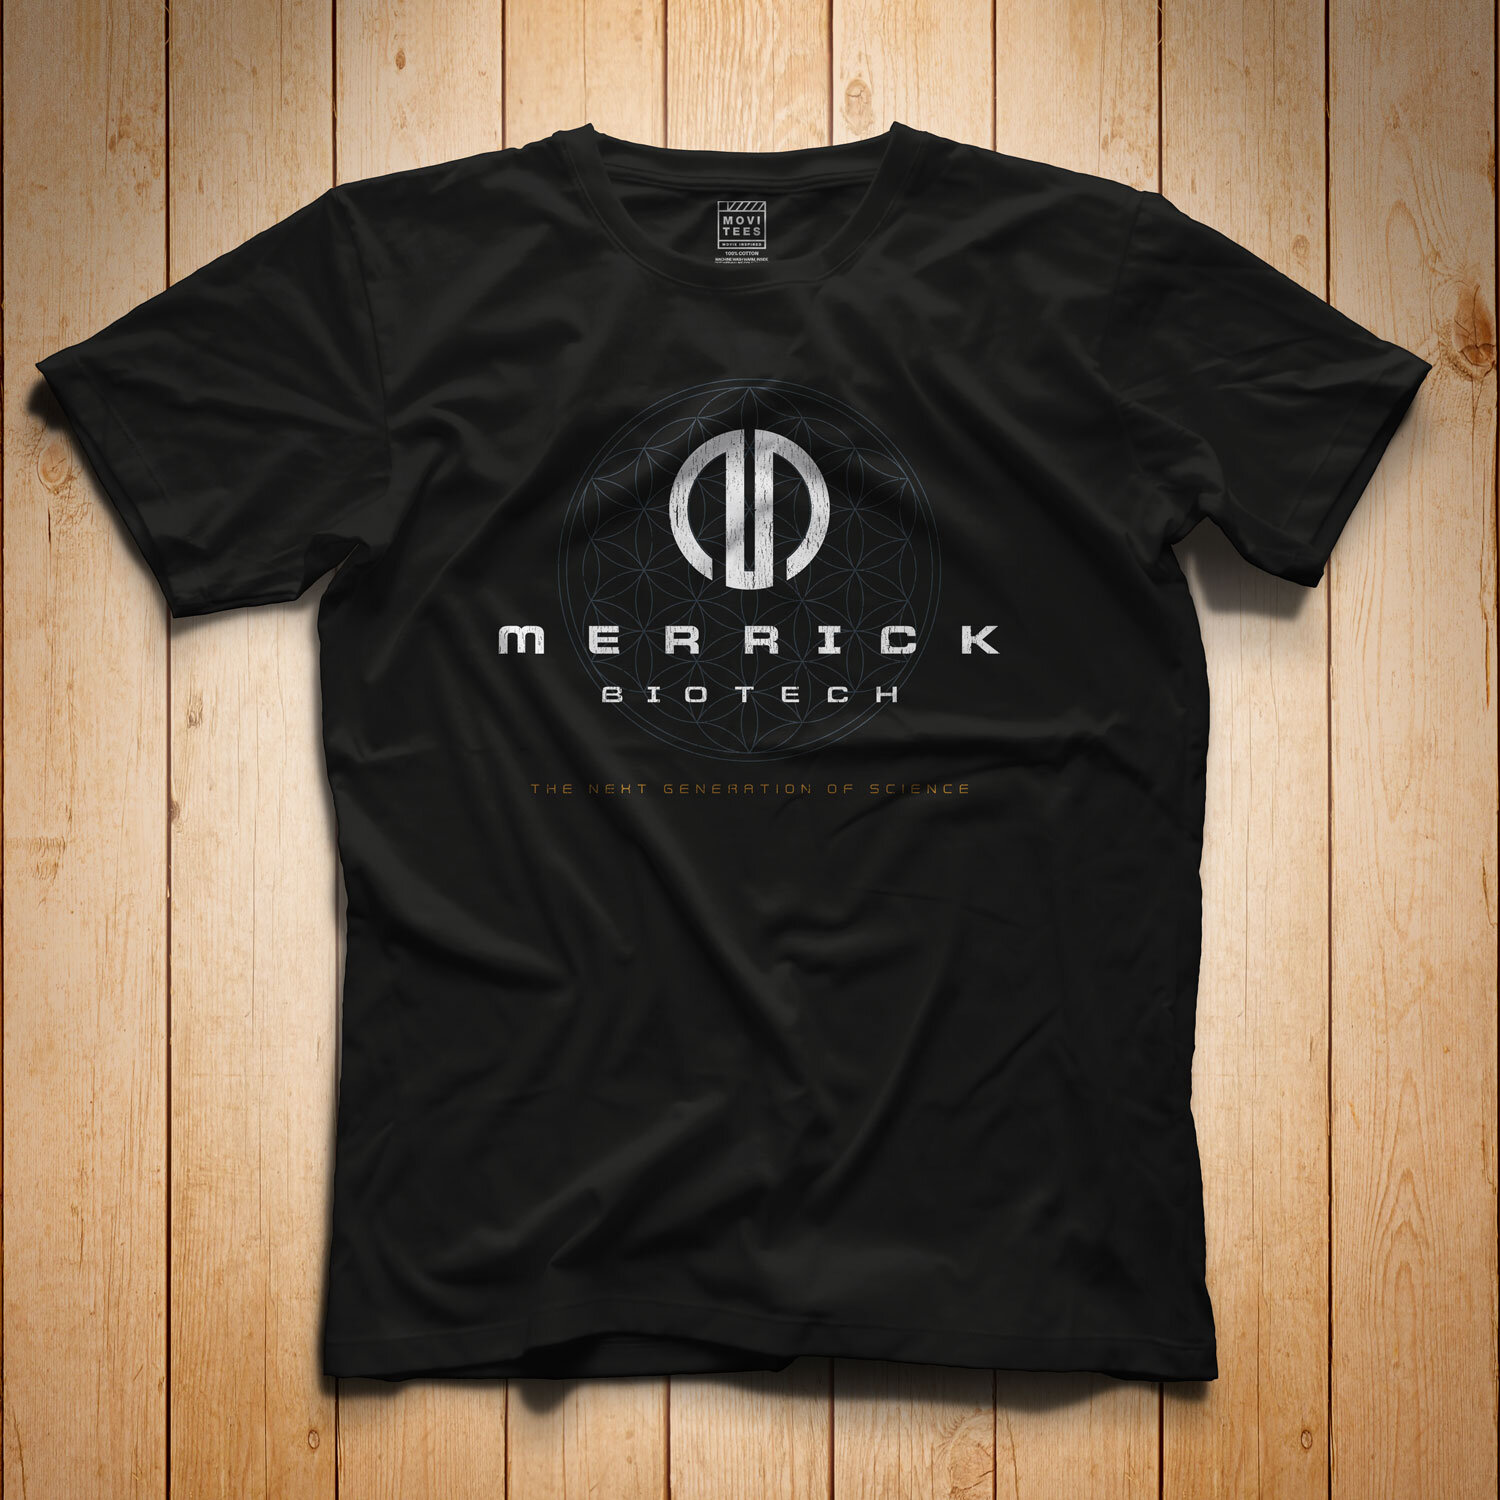 Merrick Biotech T-Shirt inspired by The Island - Regular T-Shirt — MoviTees